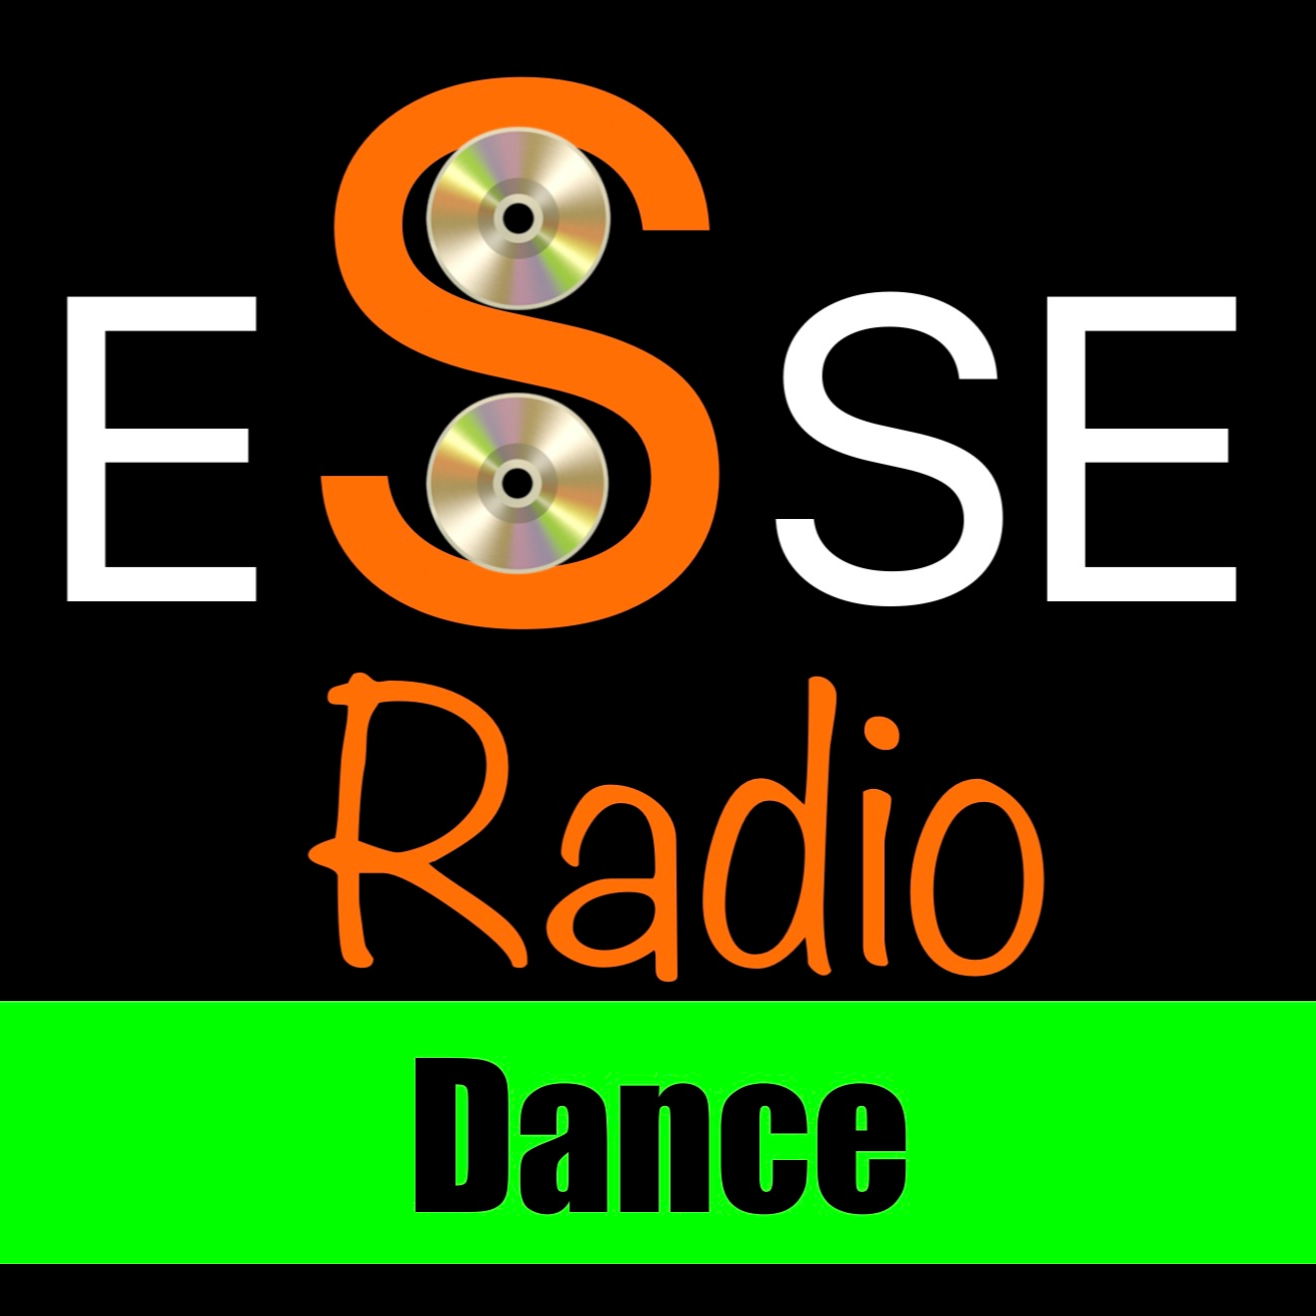 Esse Radio - Dance